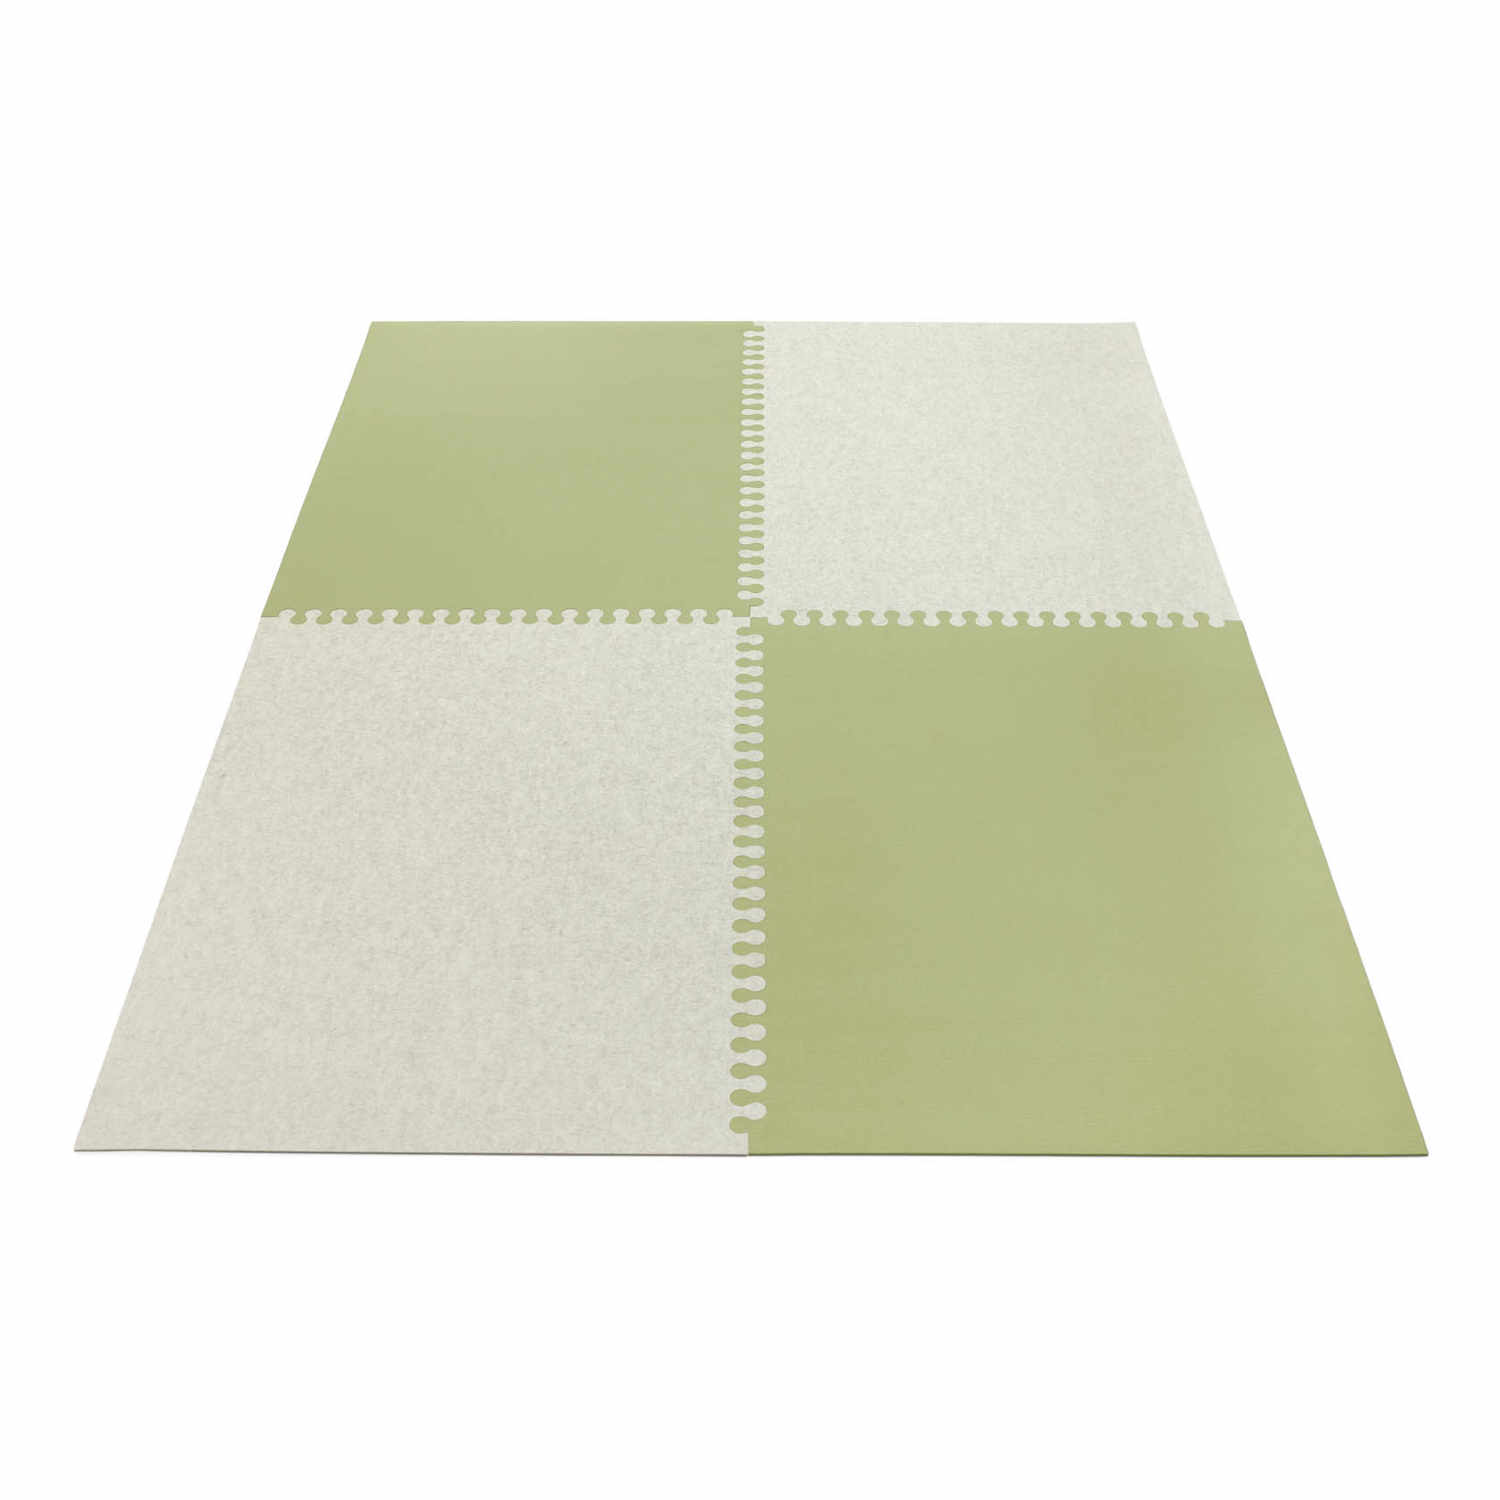 Zipp rechteckig 4-teilig Teppich , Farbe taubengrau, Farbe 2 anthrazit 01, Grösse 180 x 240 cm von HEY-SIGN